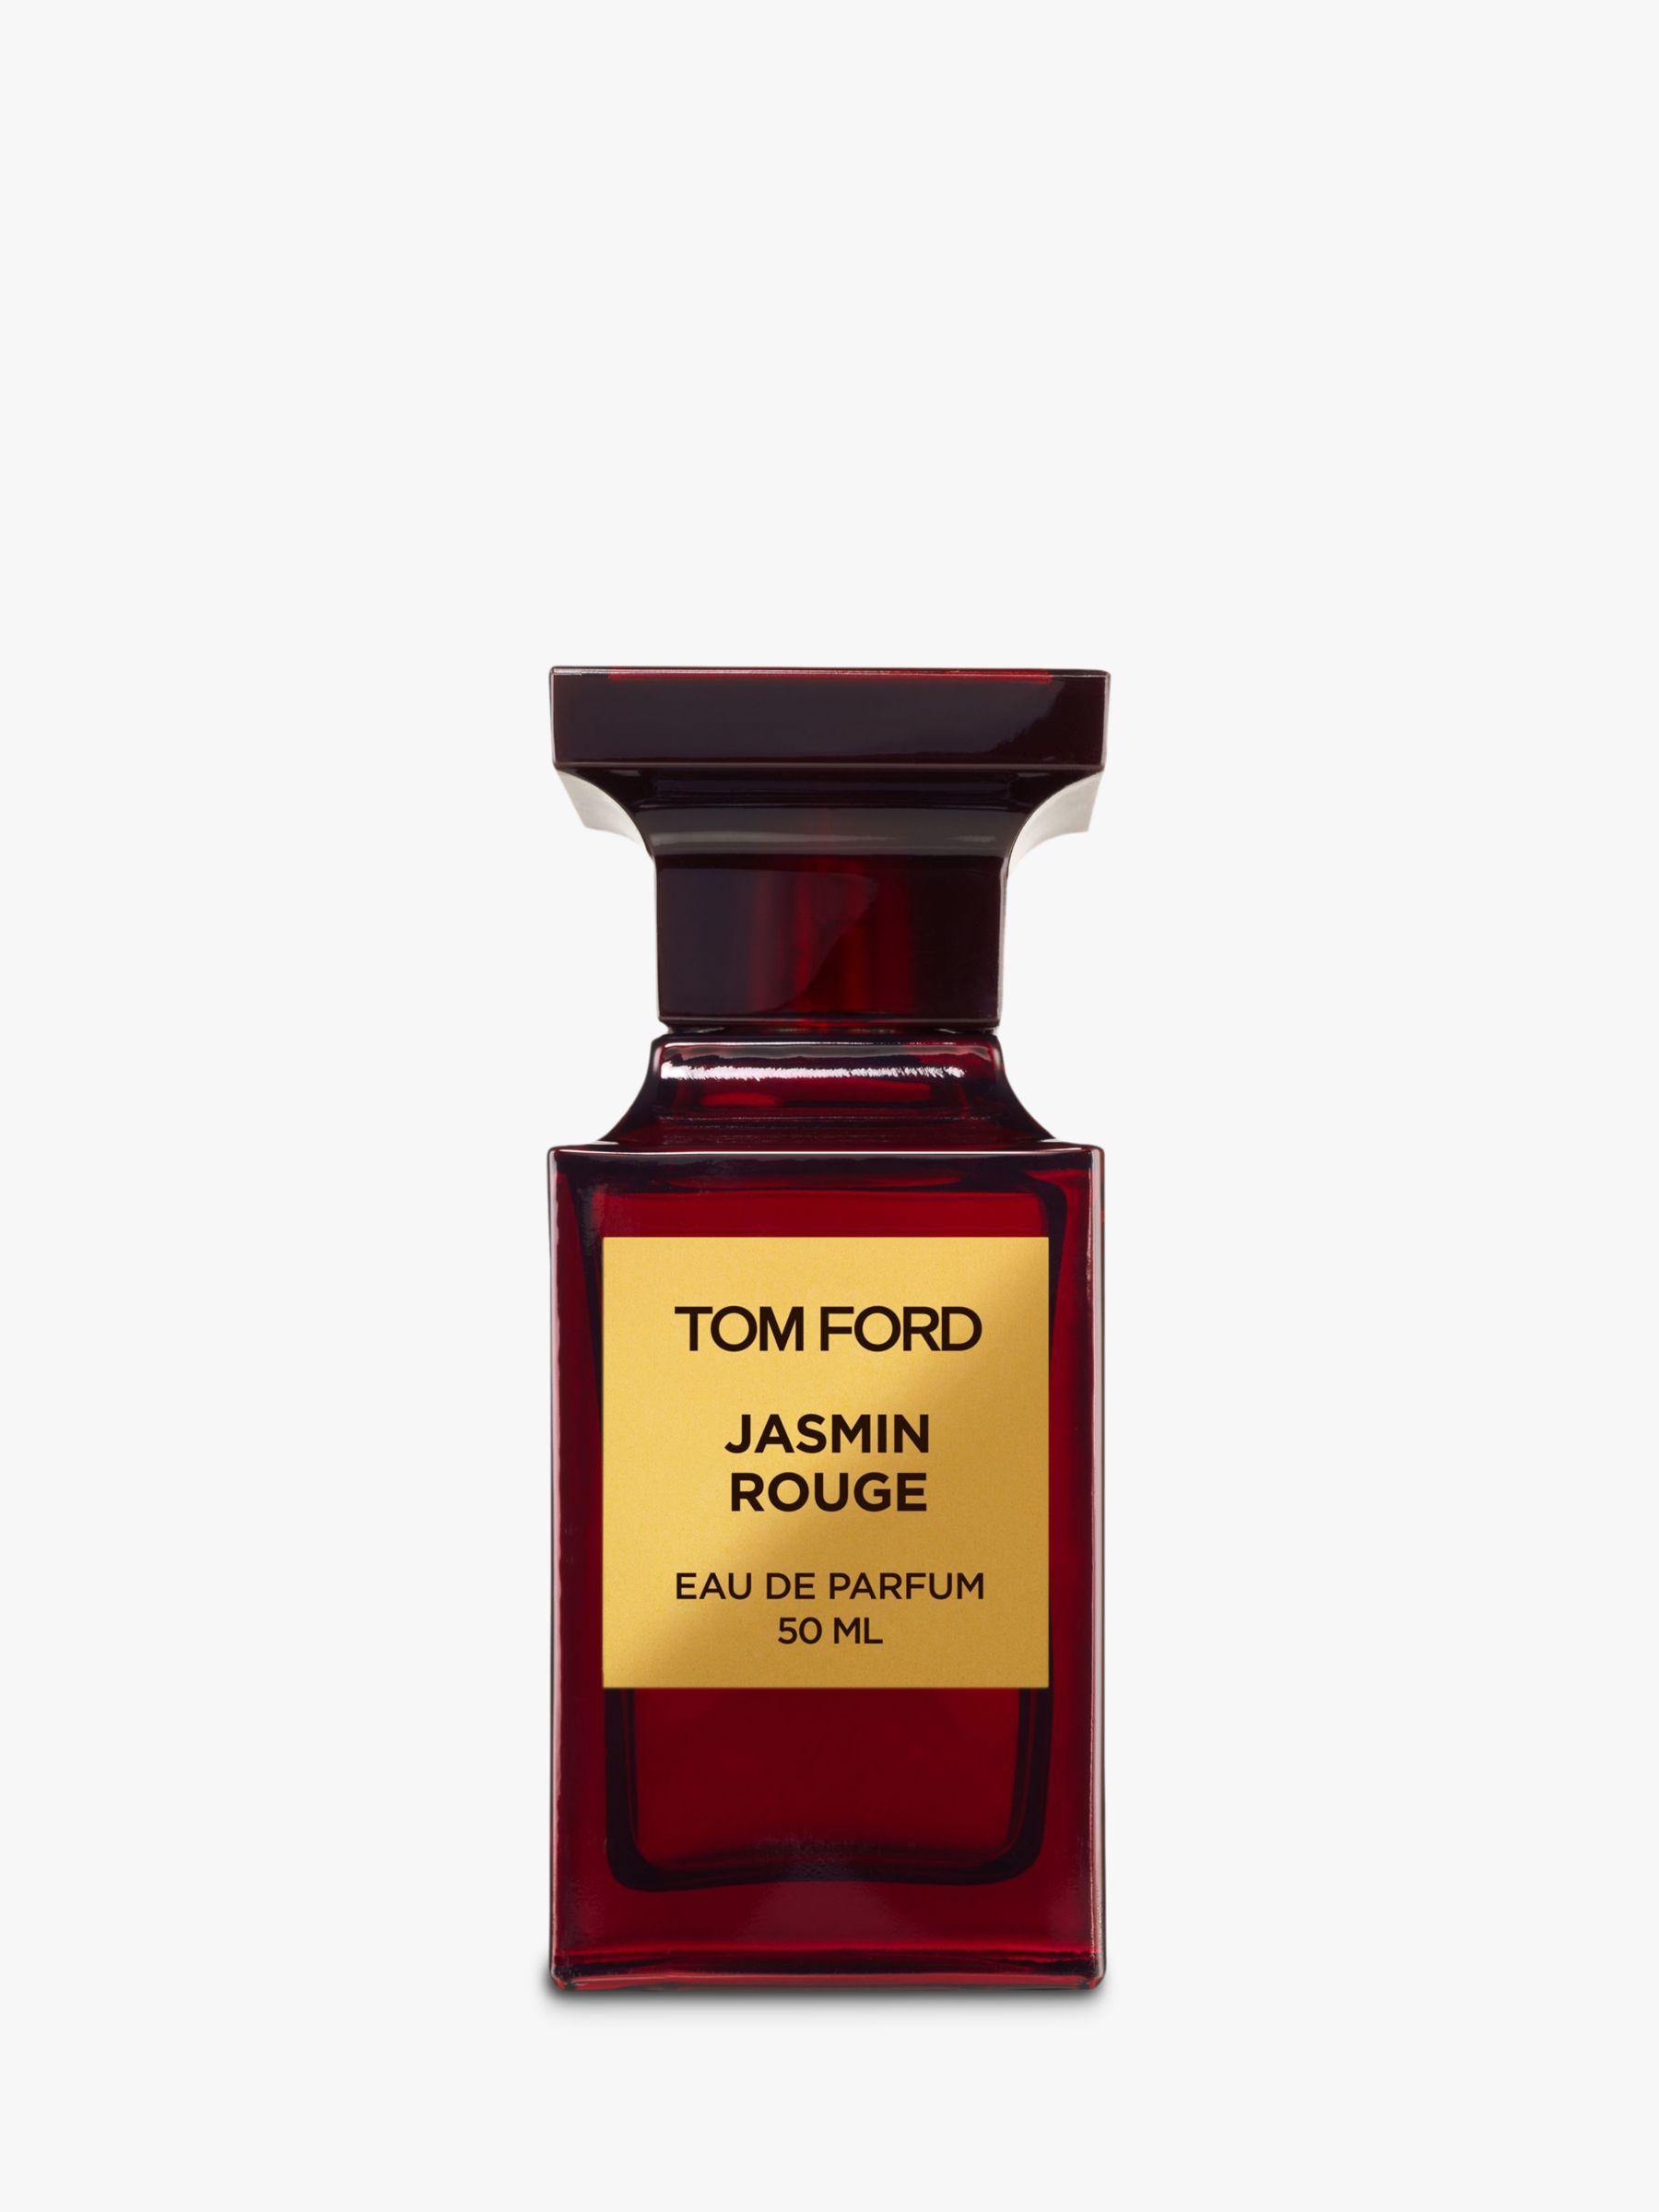 TOM FORD Private Blend Jasmin Rouge Eau de Parfum, 50ml at John Lewis &  Partners